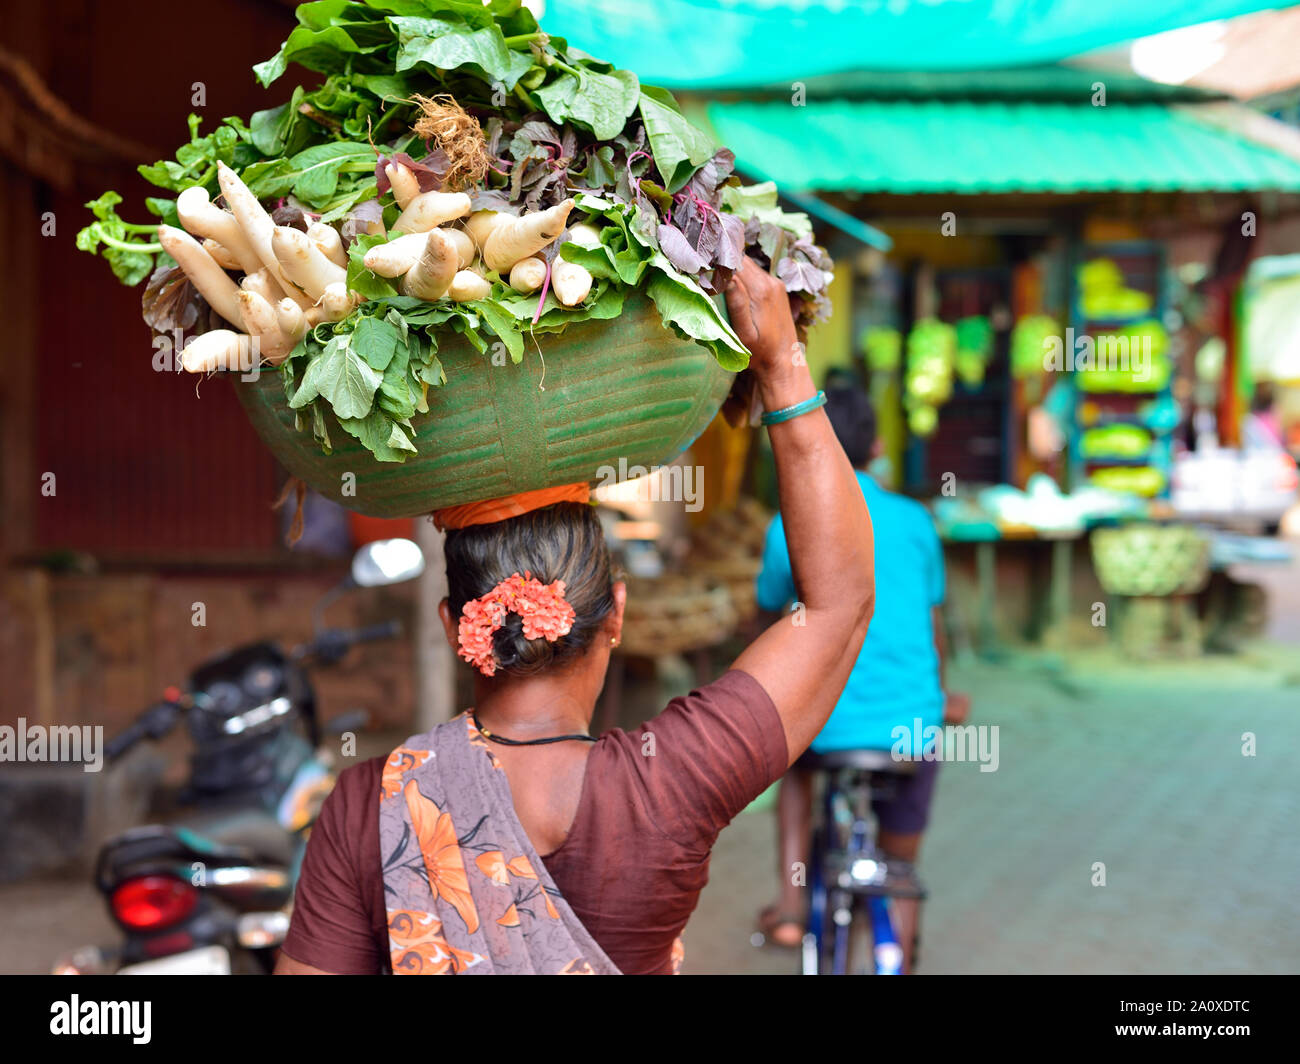 La donna sta portando le verdure nel cestello sulla testa Gokarna, il Karnataka. Foto Stock